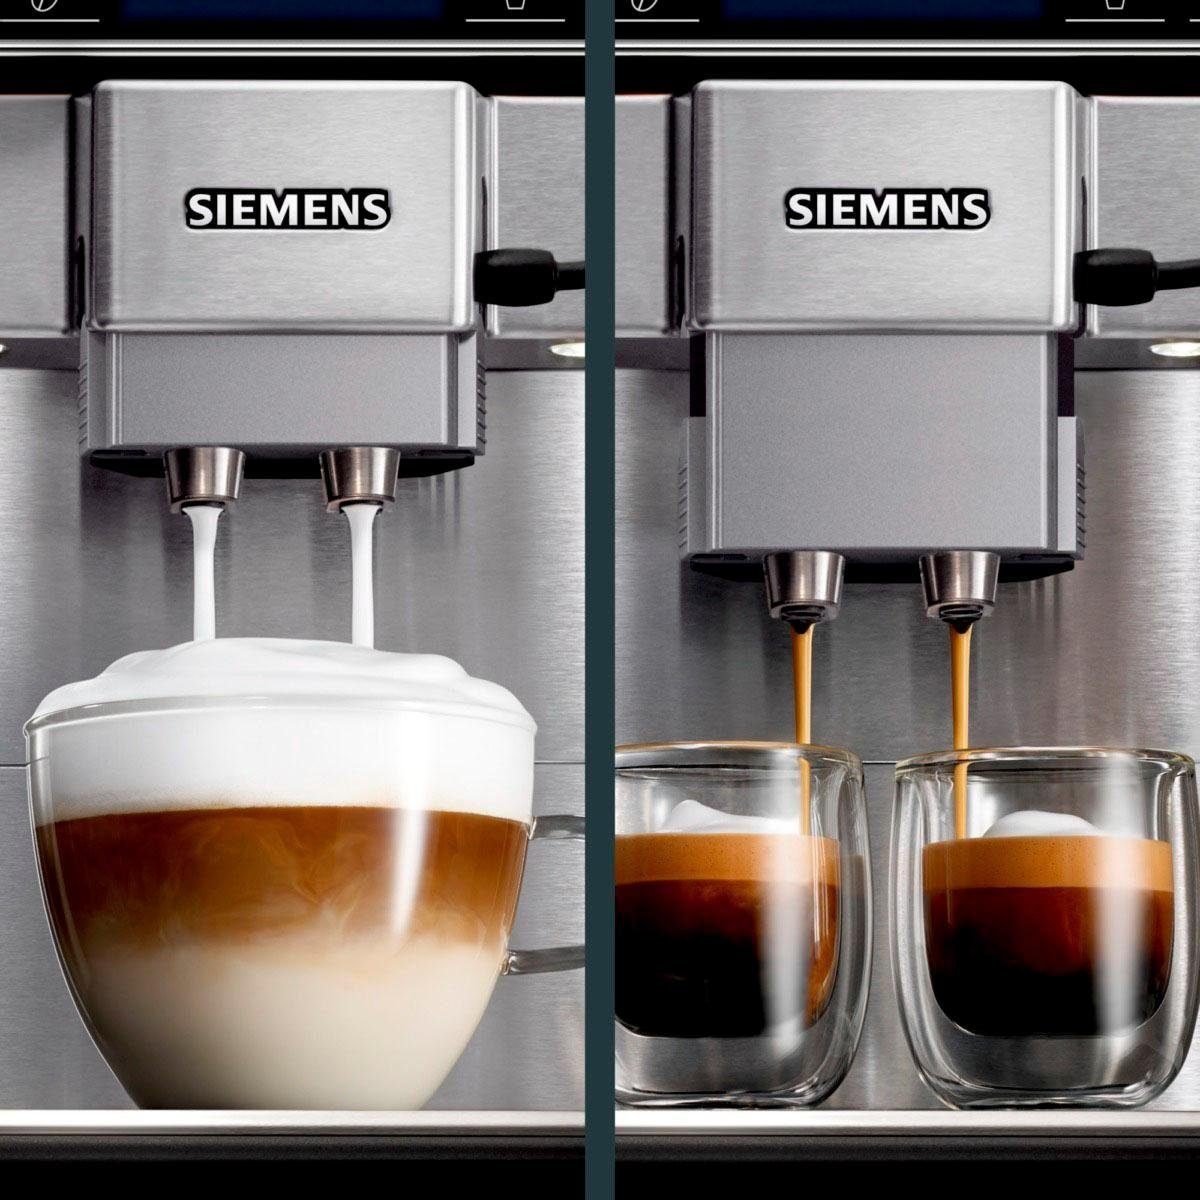 2 Tassenpodest SIEMENS EQ.6 4 Tassen plus TE657503DE, s700 Profile, gleichzeitig, beleuchtetes Kaffeevollautomat